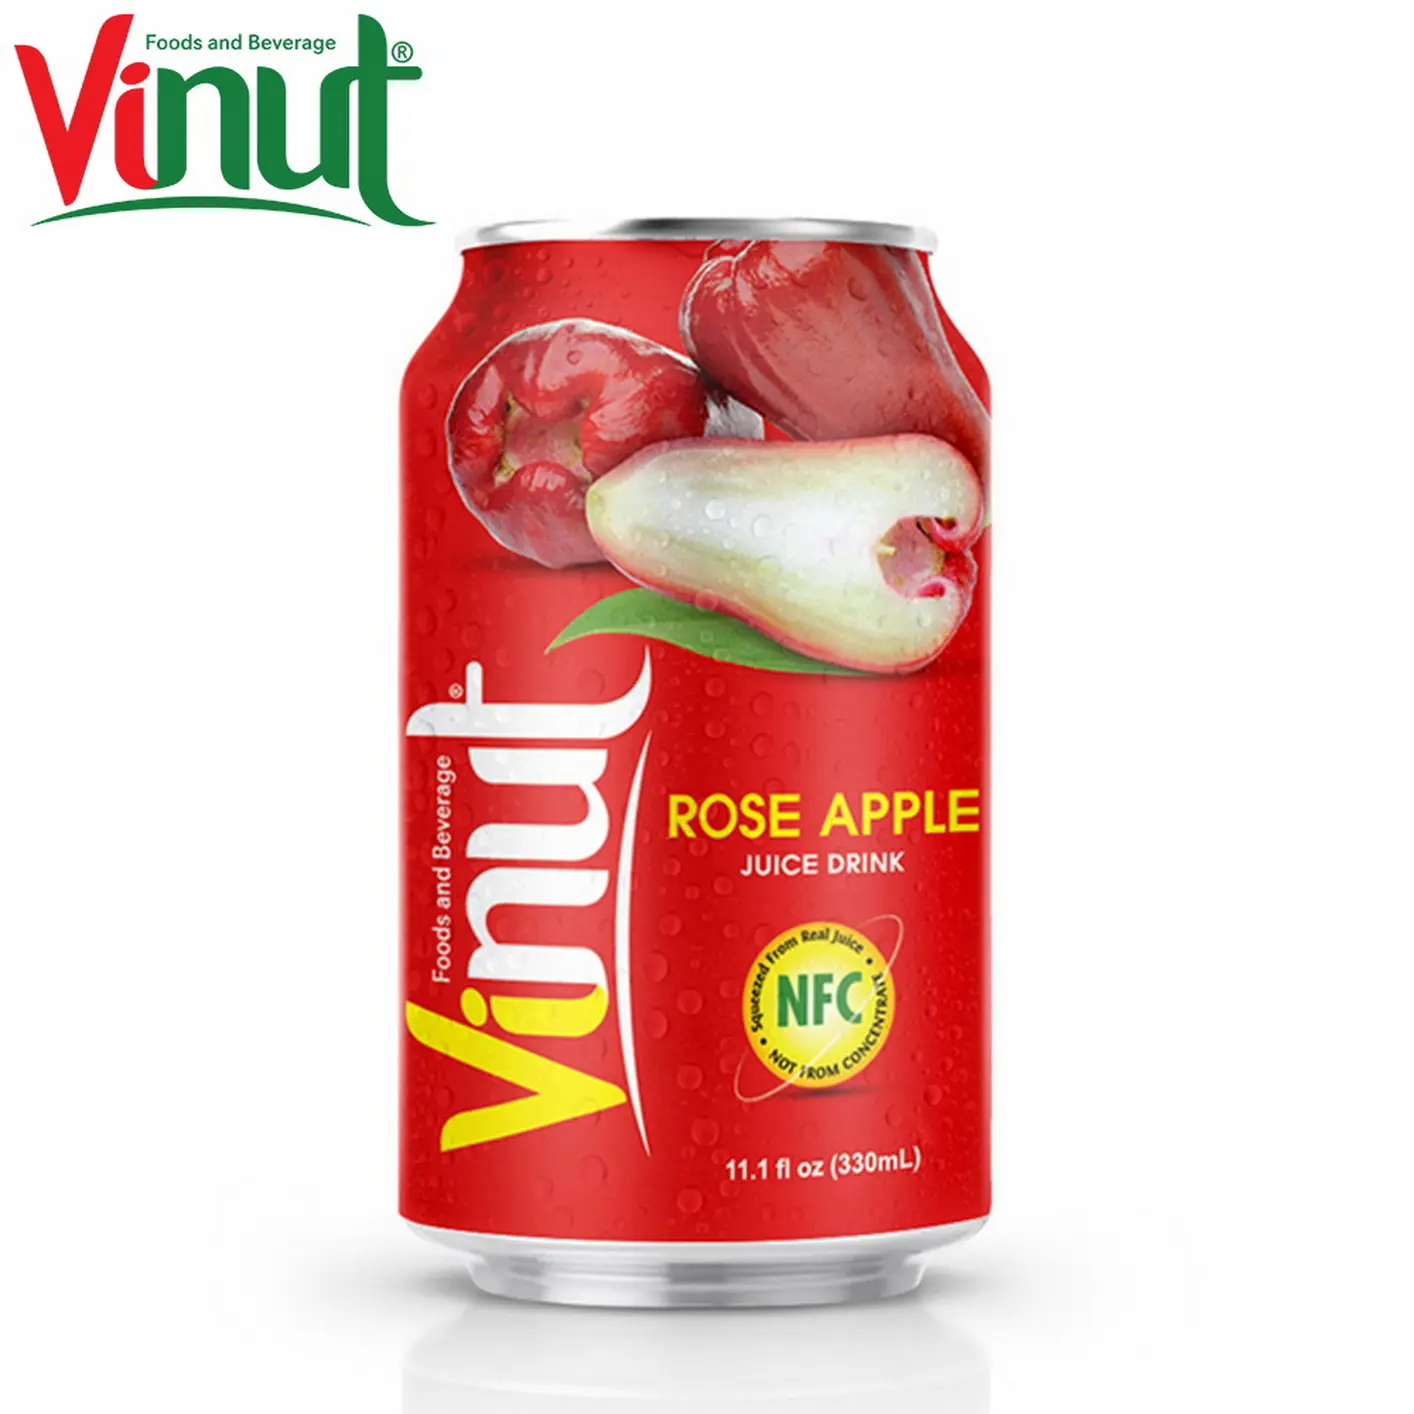 330ml vinut can (estanhado) sabor original, maçã rosa, suco, oem, boa qualidade, feita com uma mistura de suco de frutas